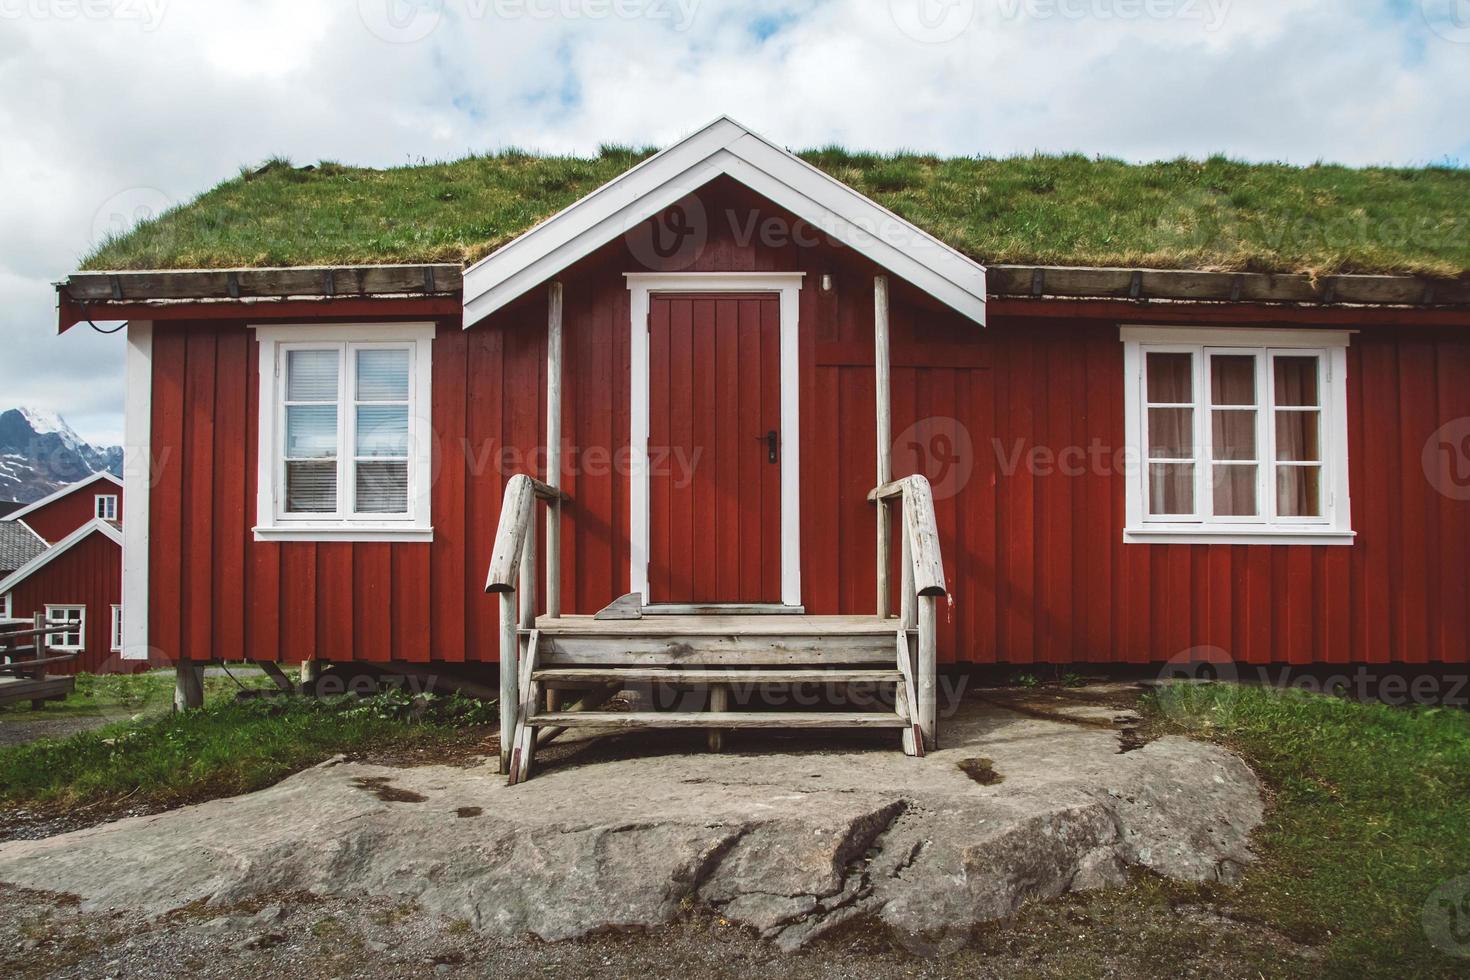 noruega rorbu casas vermelhas e com musgo no telhado paisagem viagem escandinava vista para as ilhas lofoten. paisagem natural escandinava foto